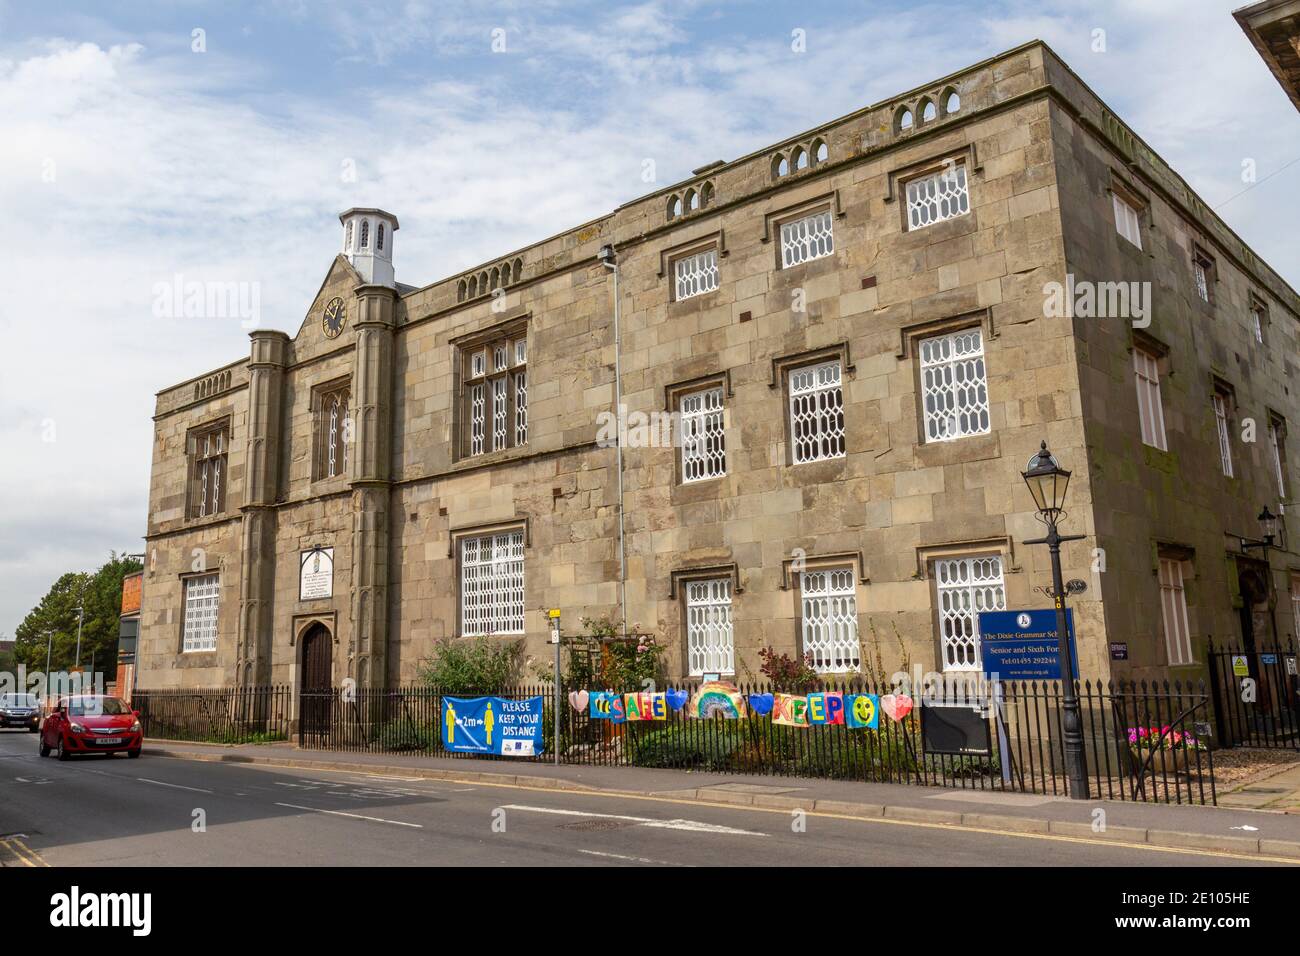 Das Dixie Grammar School (Senior & Sixth Form) Gebäude, erbaut 1828, Market Place in Market Bosworth, Leicestershire, Großbritannien. Stockfoto